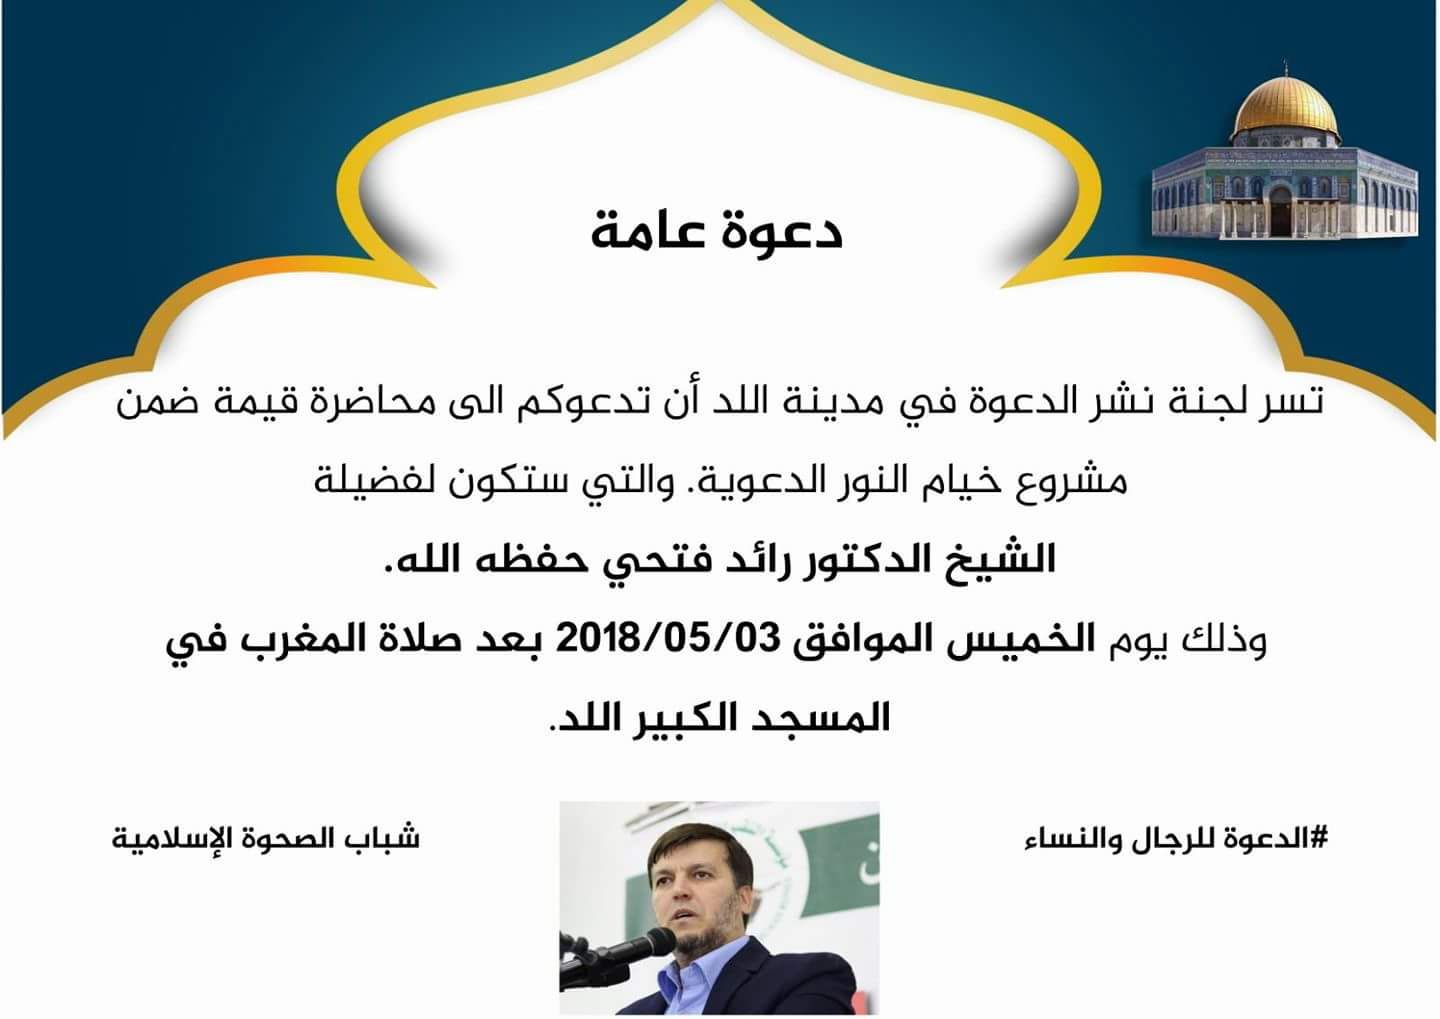 الخميس: محاضرة قيّمة للدكتور رائد فتحي في المسجد العمري الكبير باللد